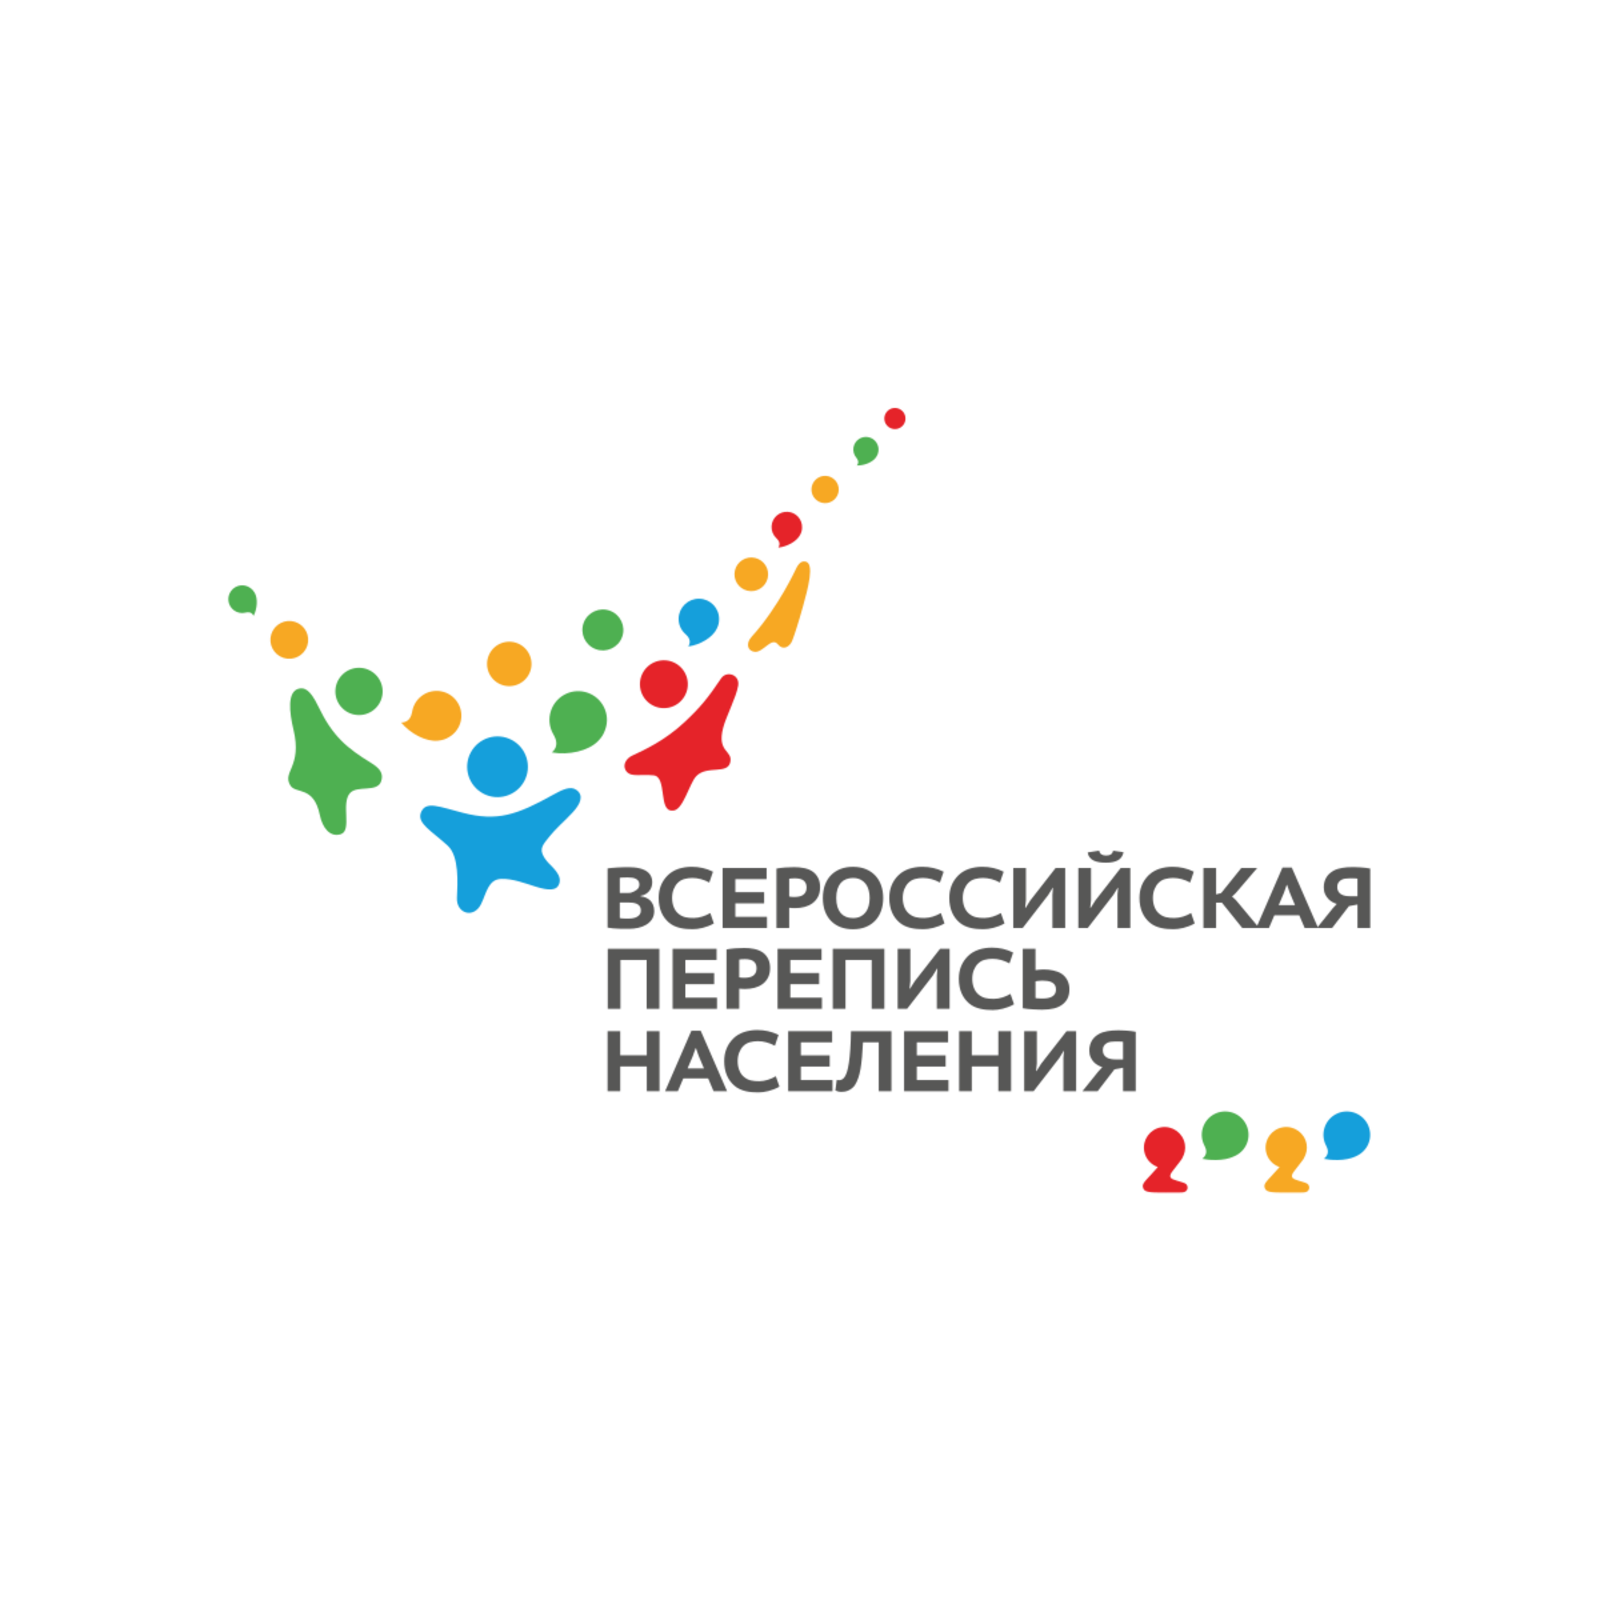 Башкиры Оренбургской области приняли участие в переписи